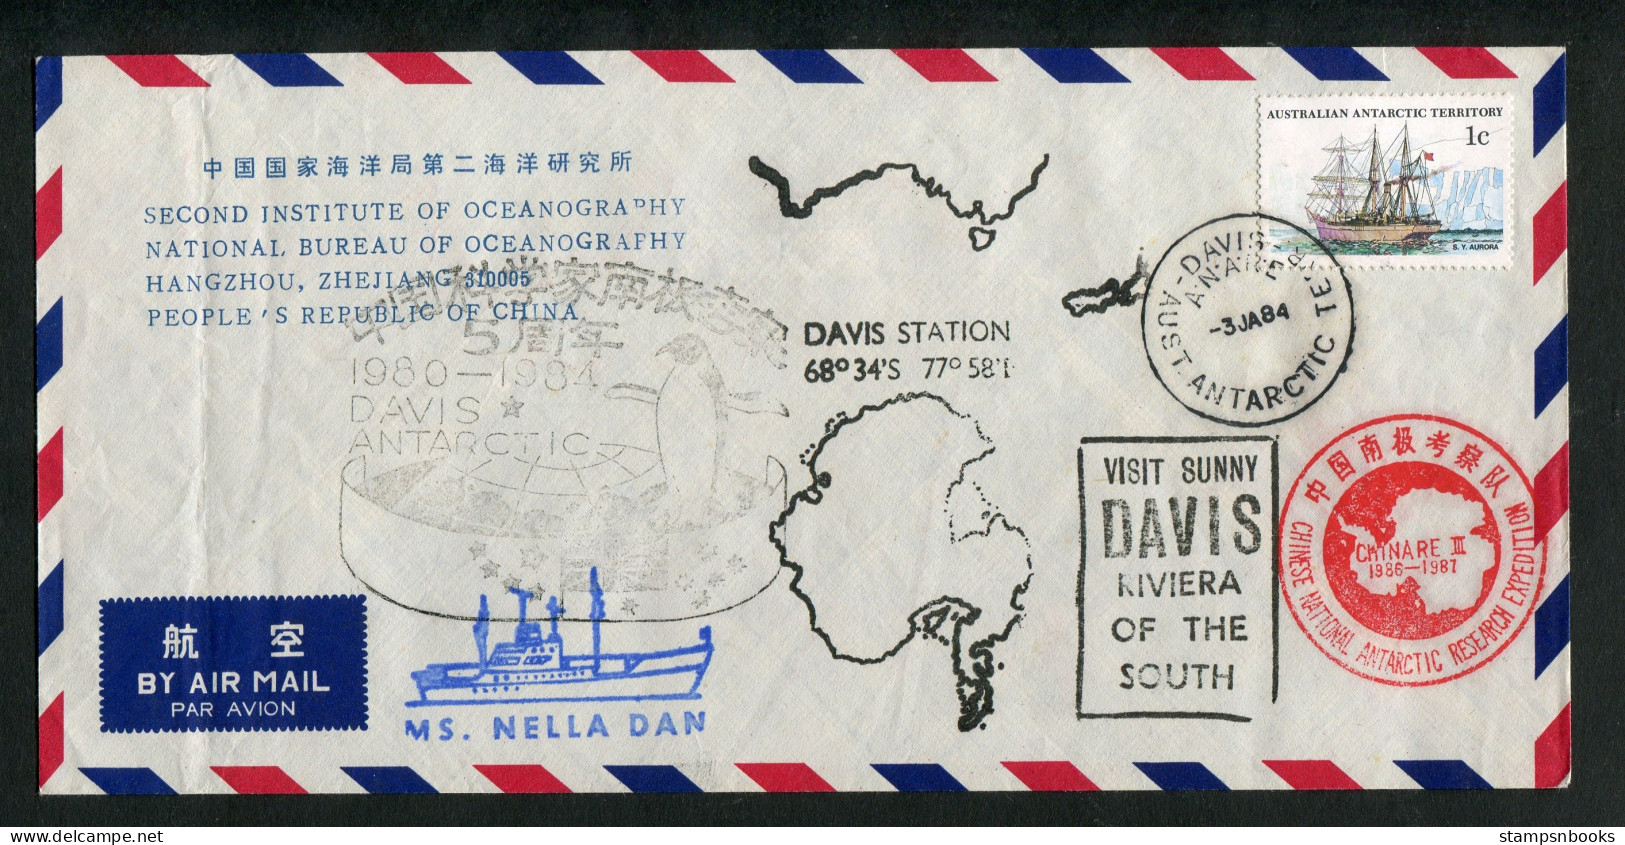 1984 A.A.T. China M.S. NELLA DAN Ship DAVIS Antarctica CHINARE Expedition Penguin Cover - Briefe U. Dokumente